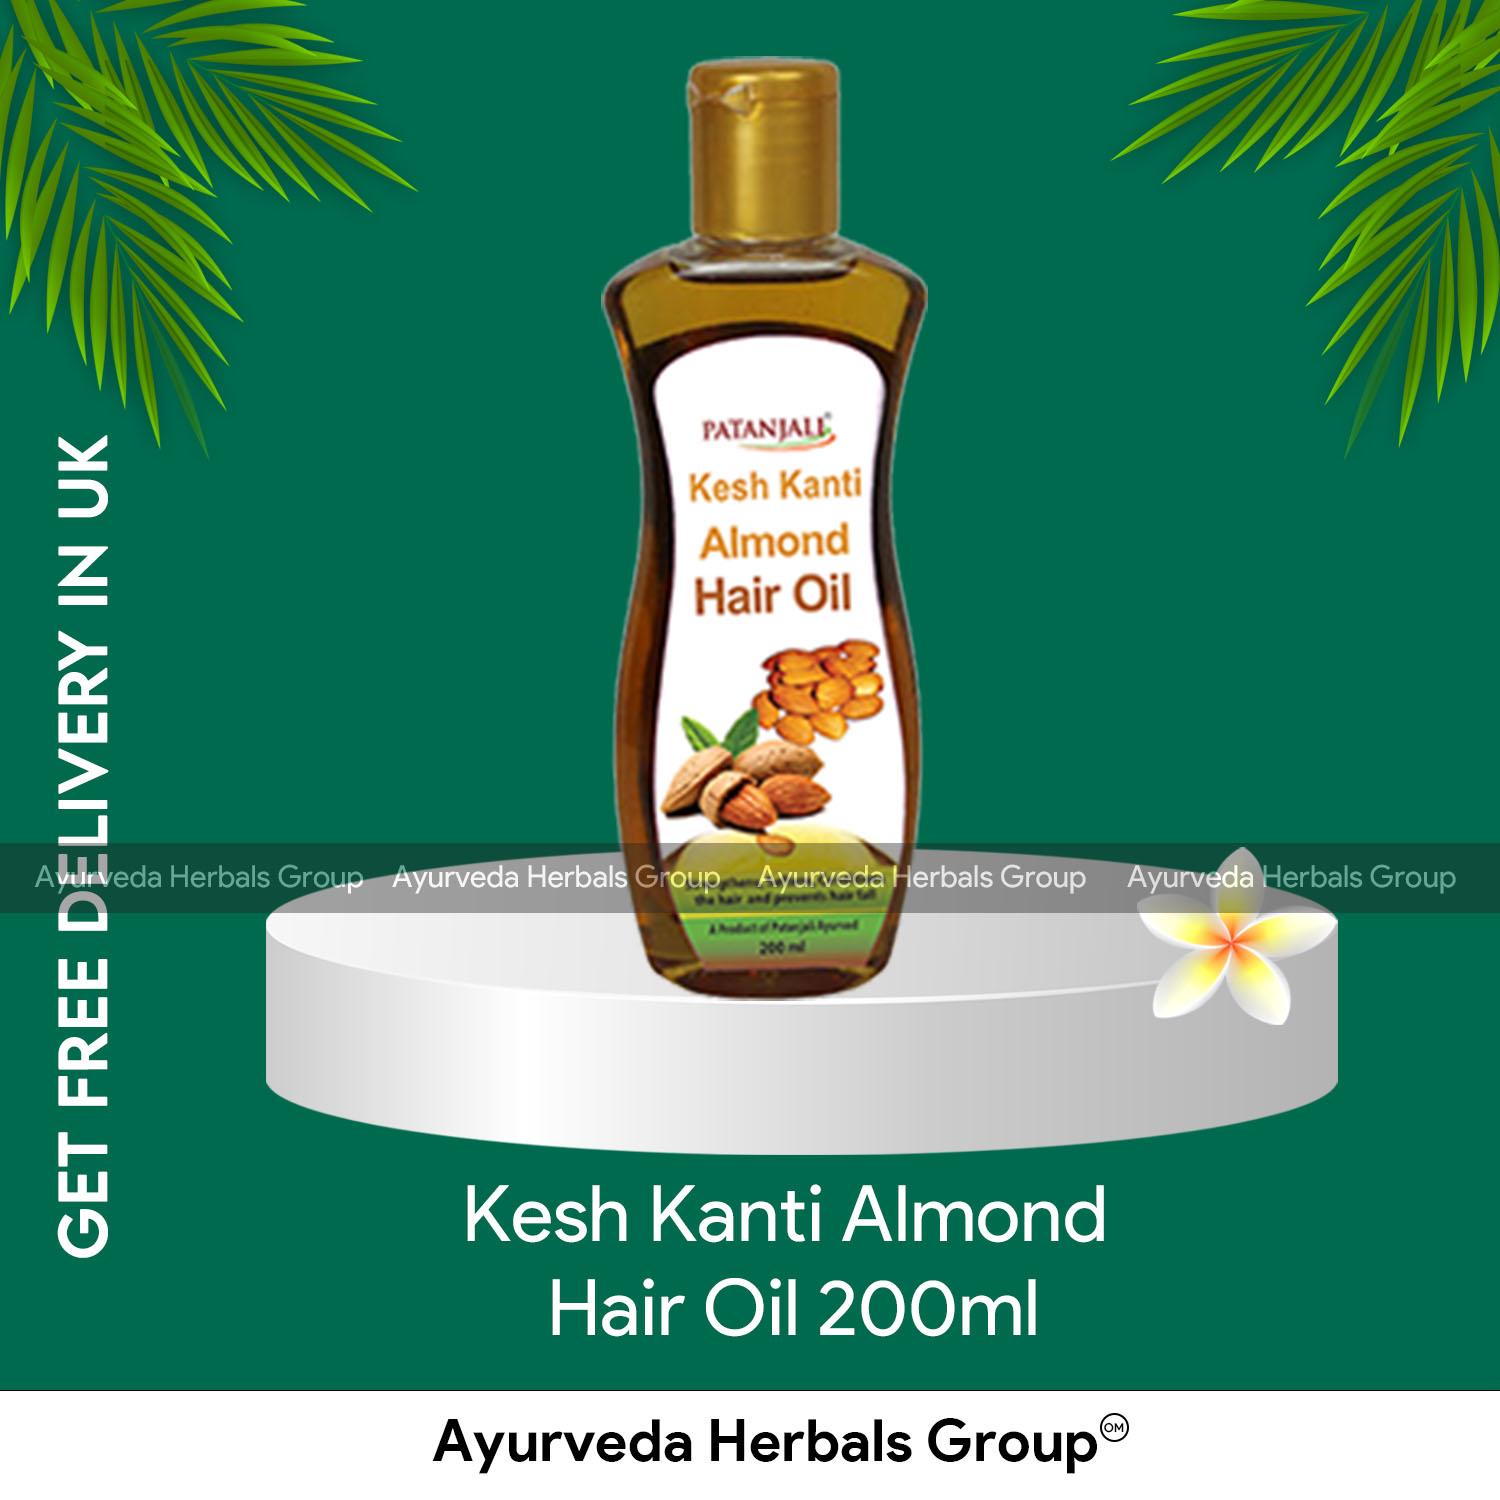 Patanjali Kesh Kanti Almond Hair Oil 200ml |